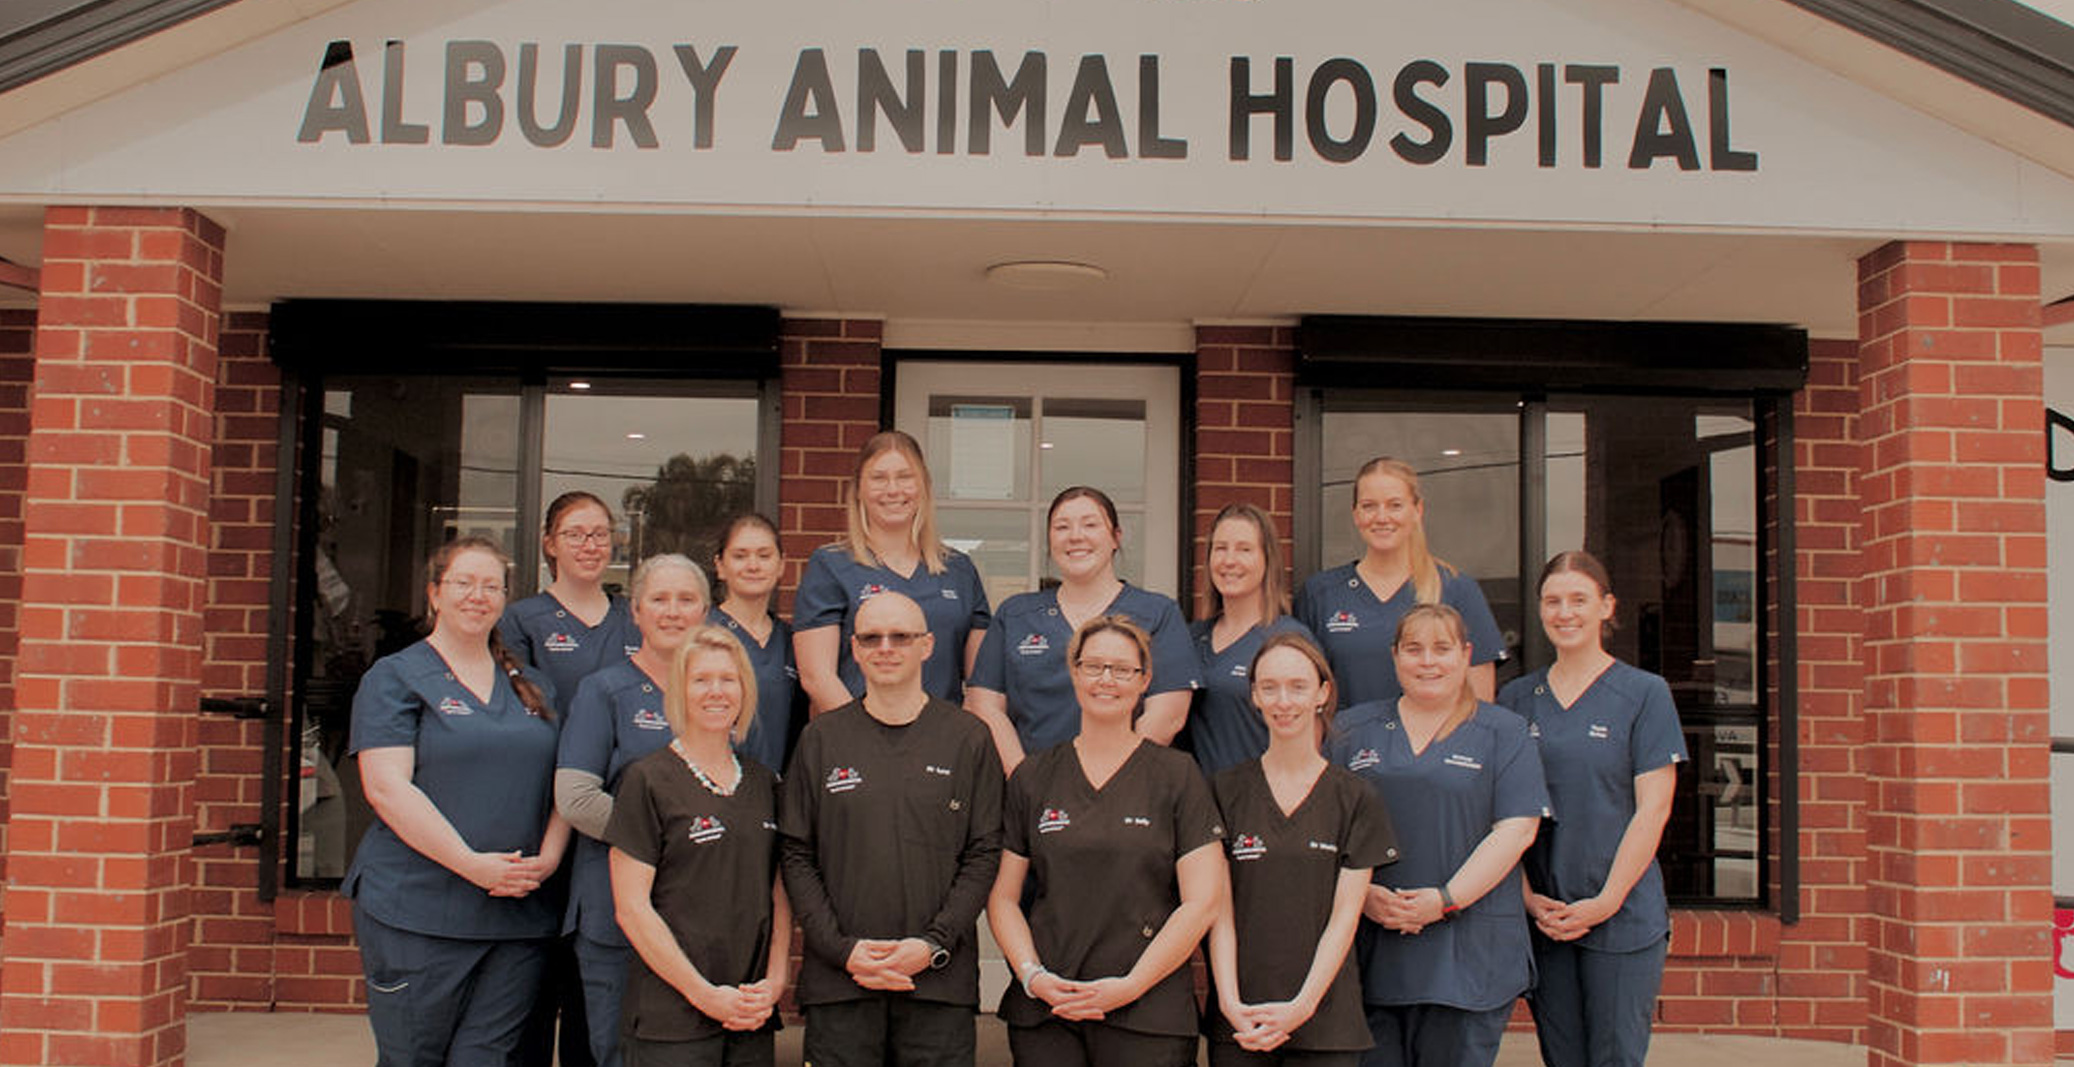 Image of Albury Animal Hospital team